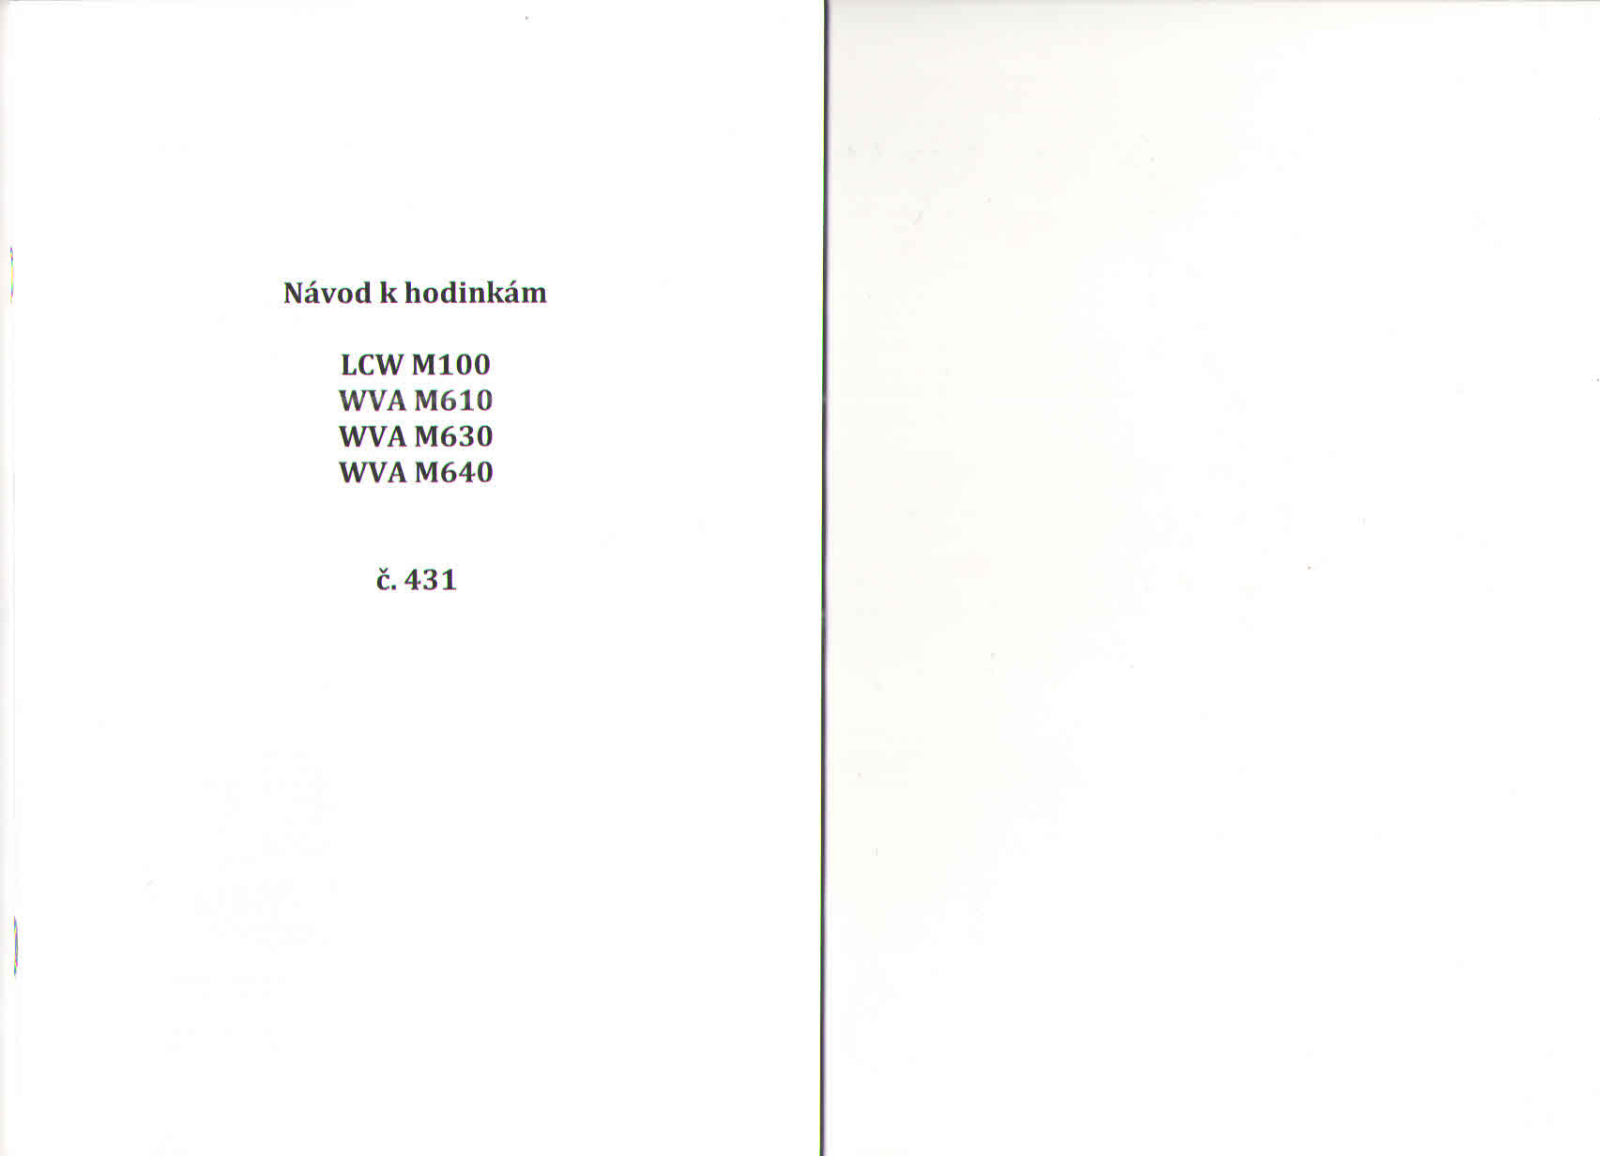 Casio WVA-M640D-1AER, WVA M610D-1A User Manual